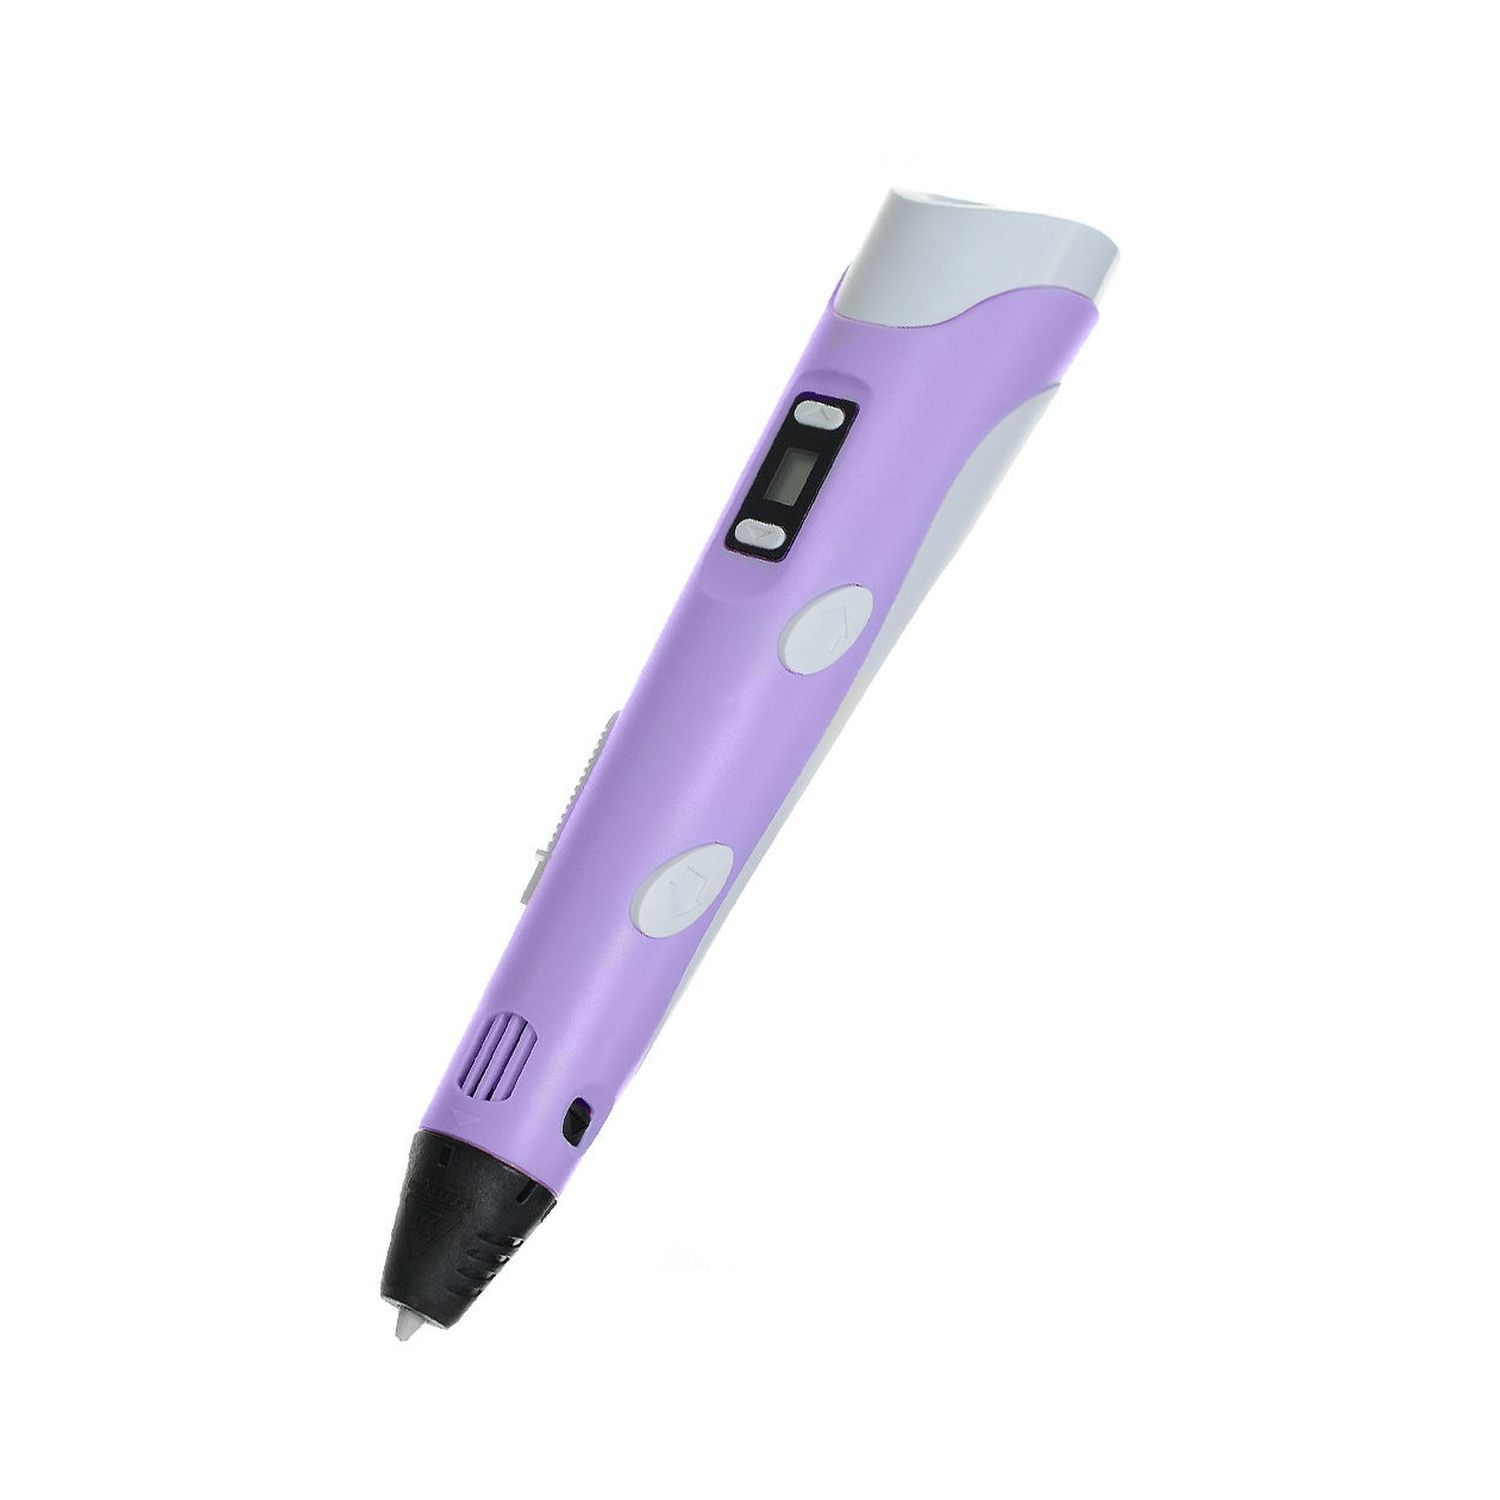 3D ручка Rabizy с LCD дисплеем - фото 2